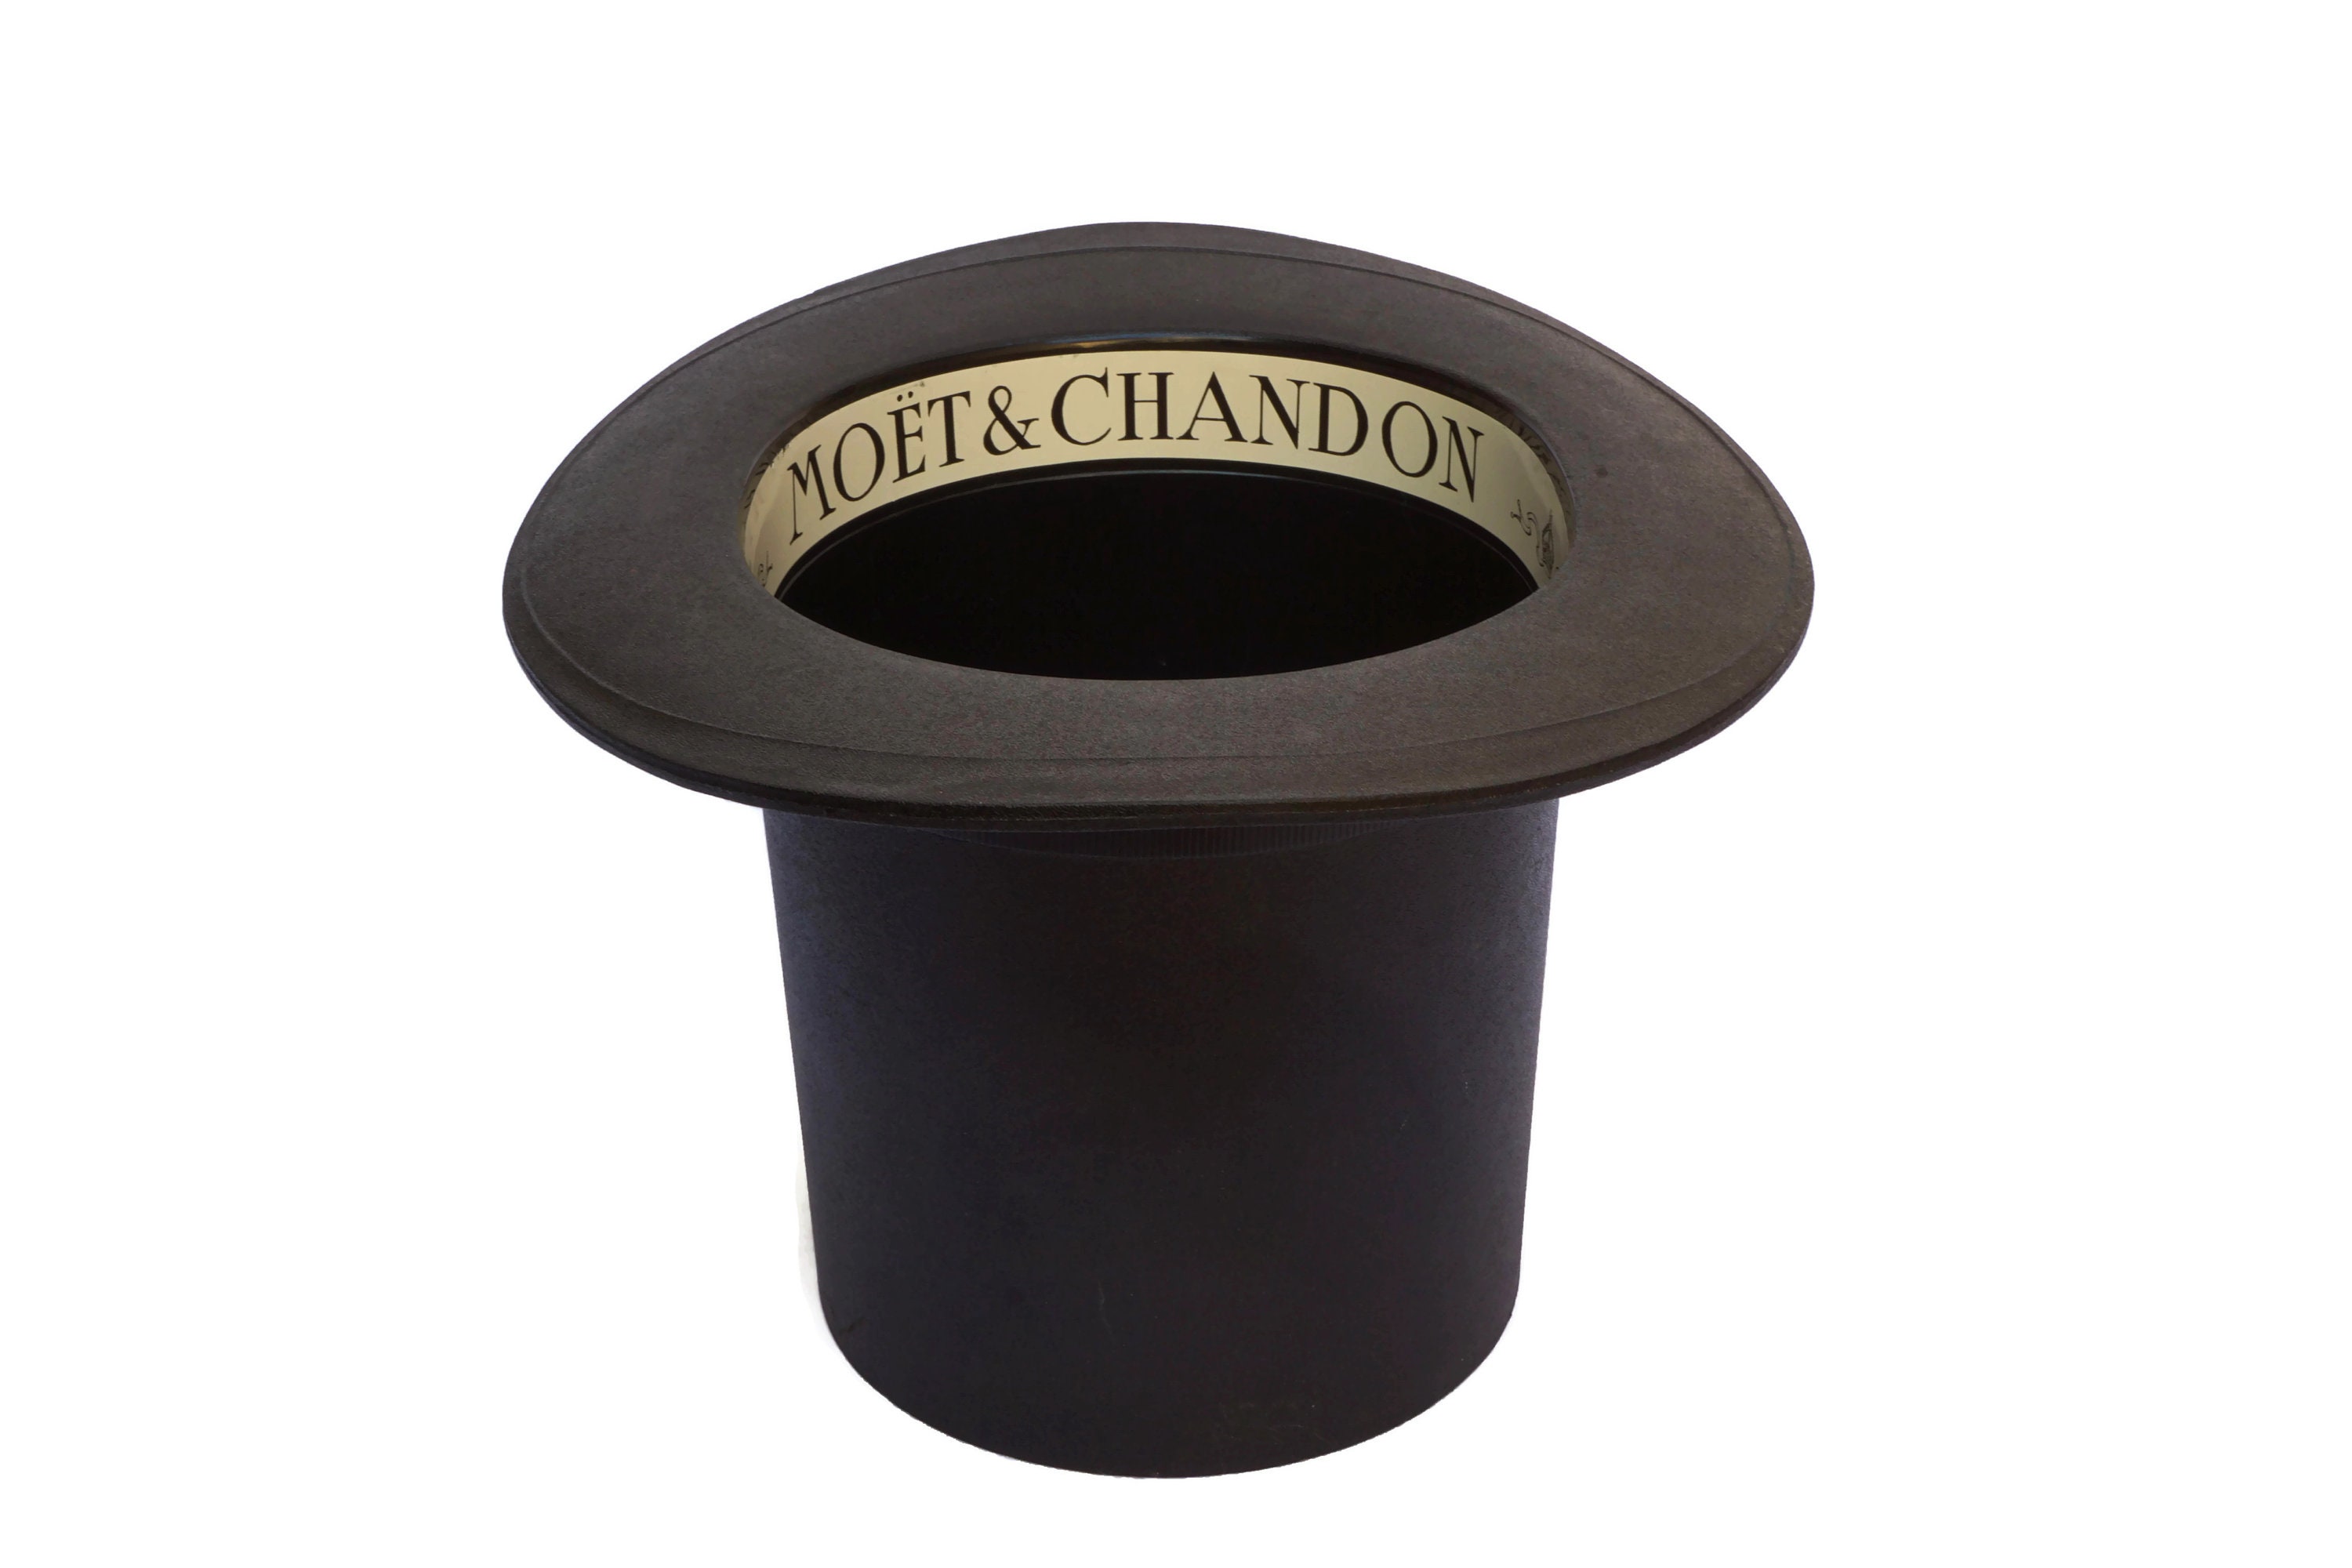 Top Hat Moet & Chandon Champagne Cooler, Seau à Glace avec Publicité Français, Décor de Bar Vintage